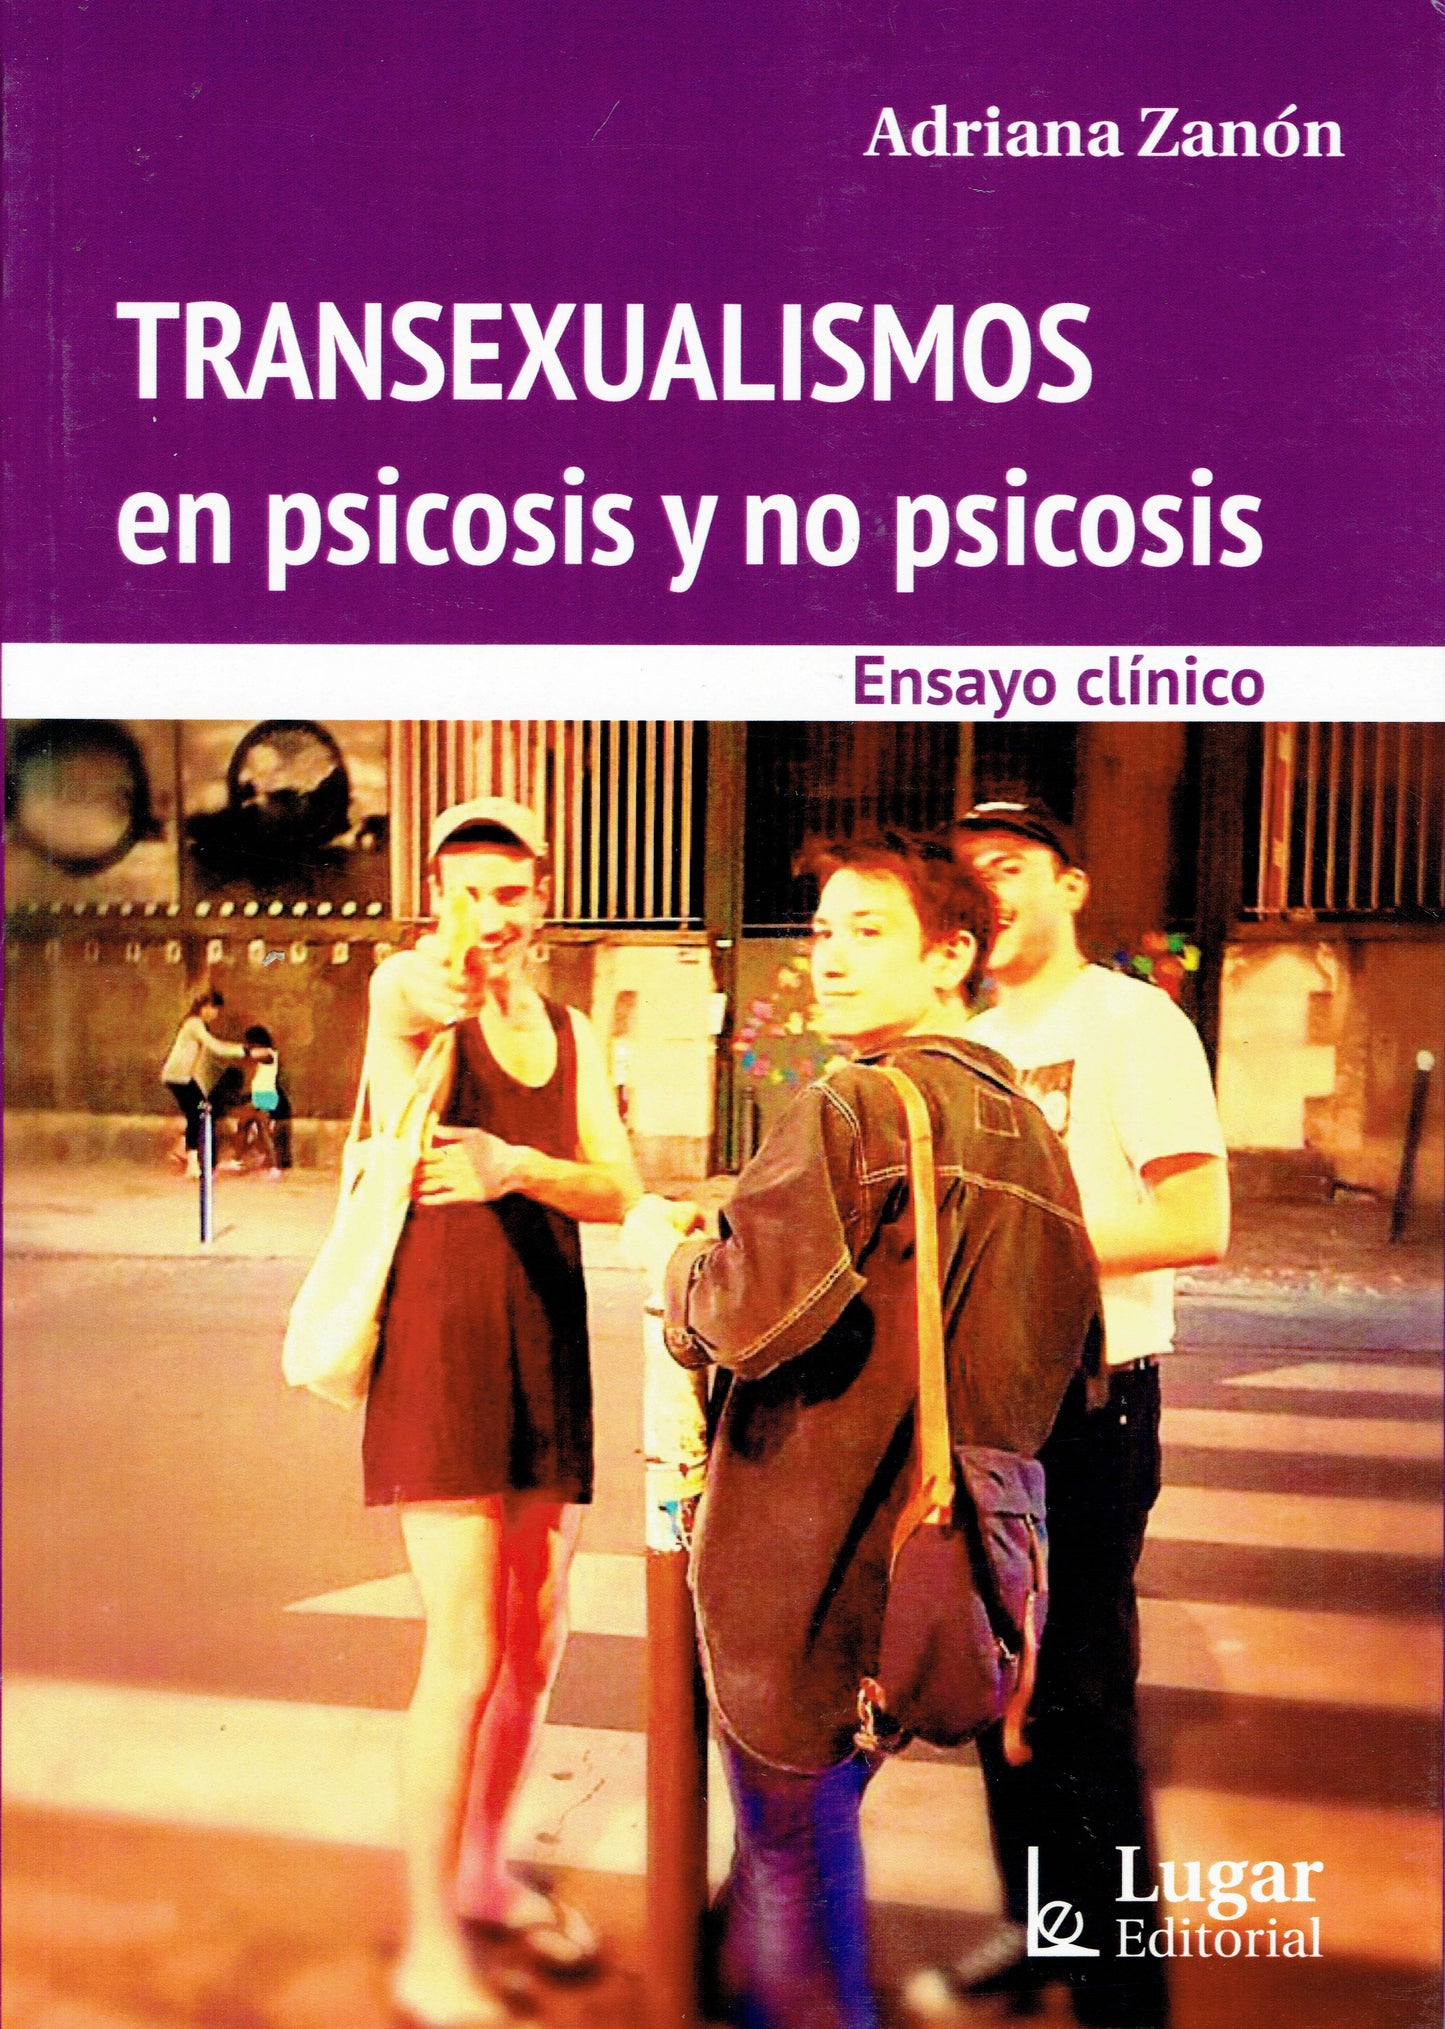 TRANSEXUALISMOS EN PSICOSIS Y NO PSICOSIS.